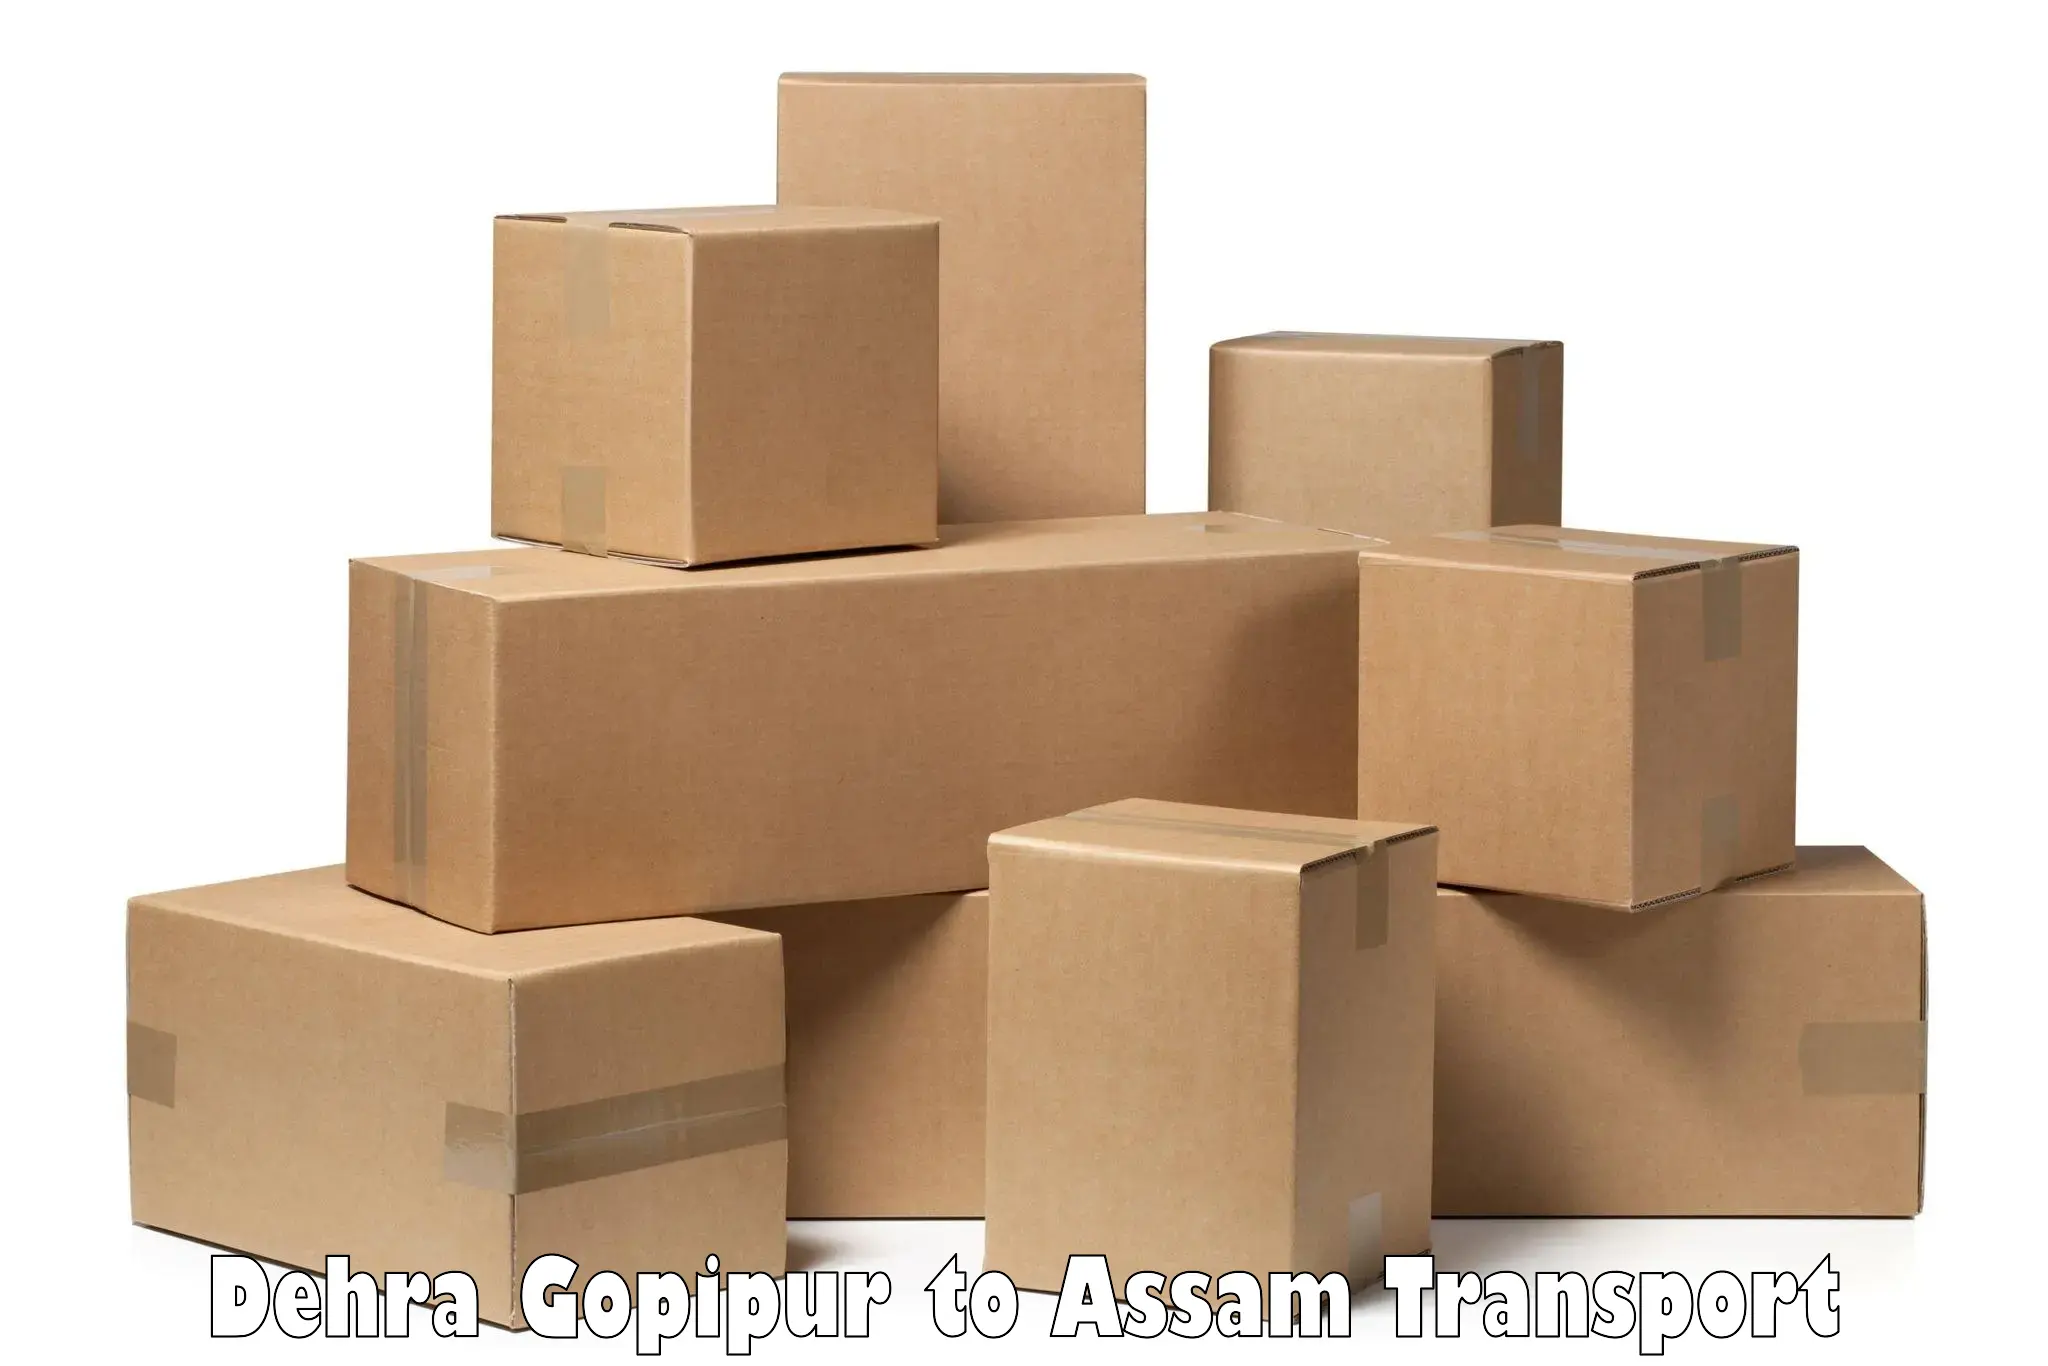 Parcel transport services Dehra Gopipur to Assam